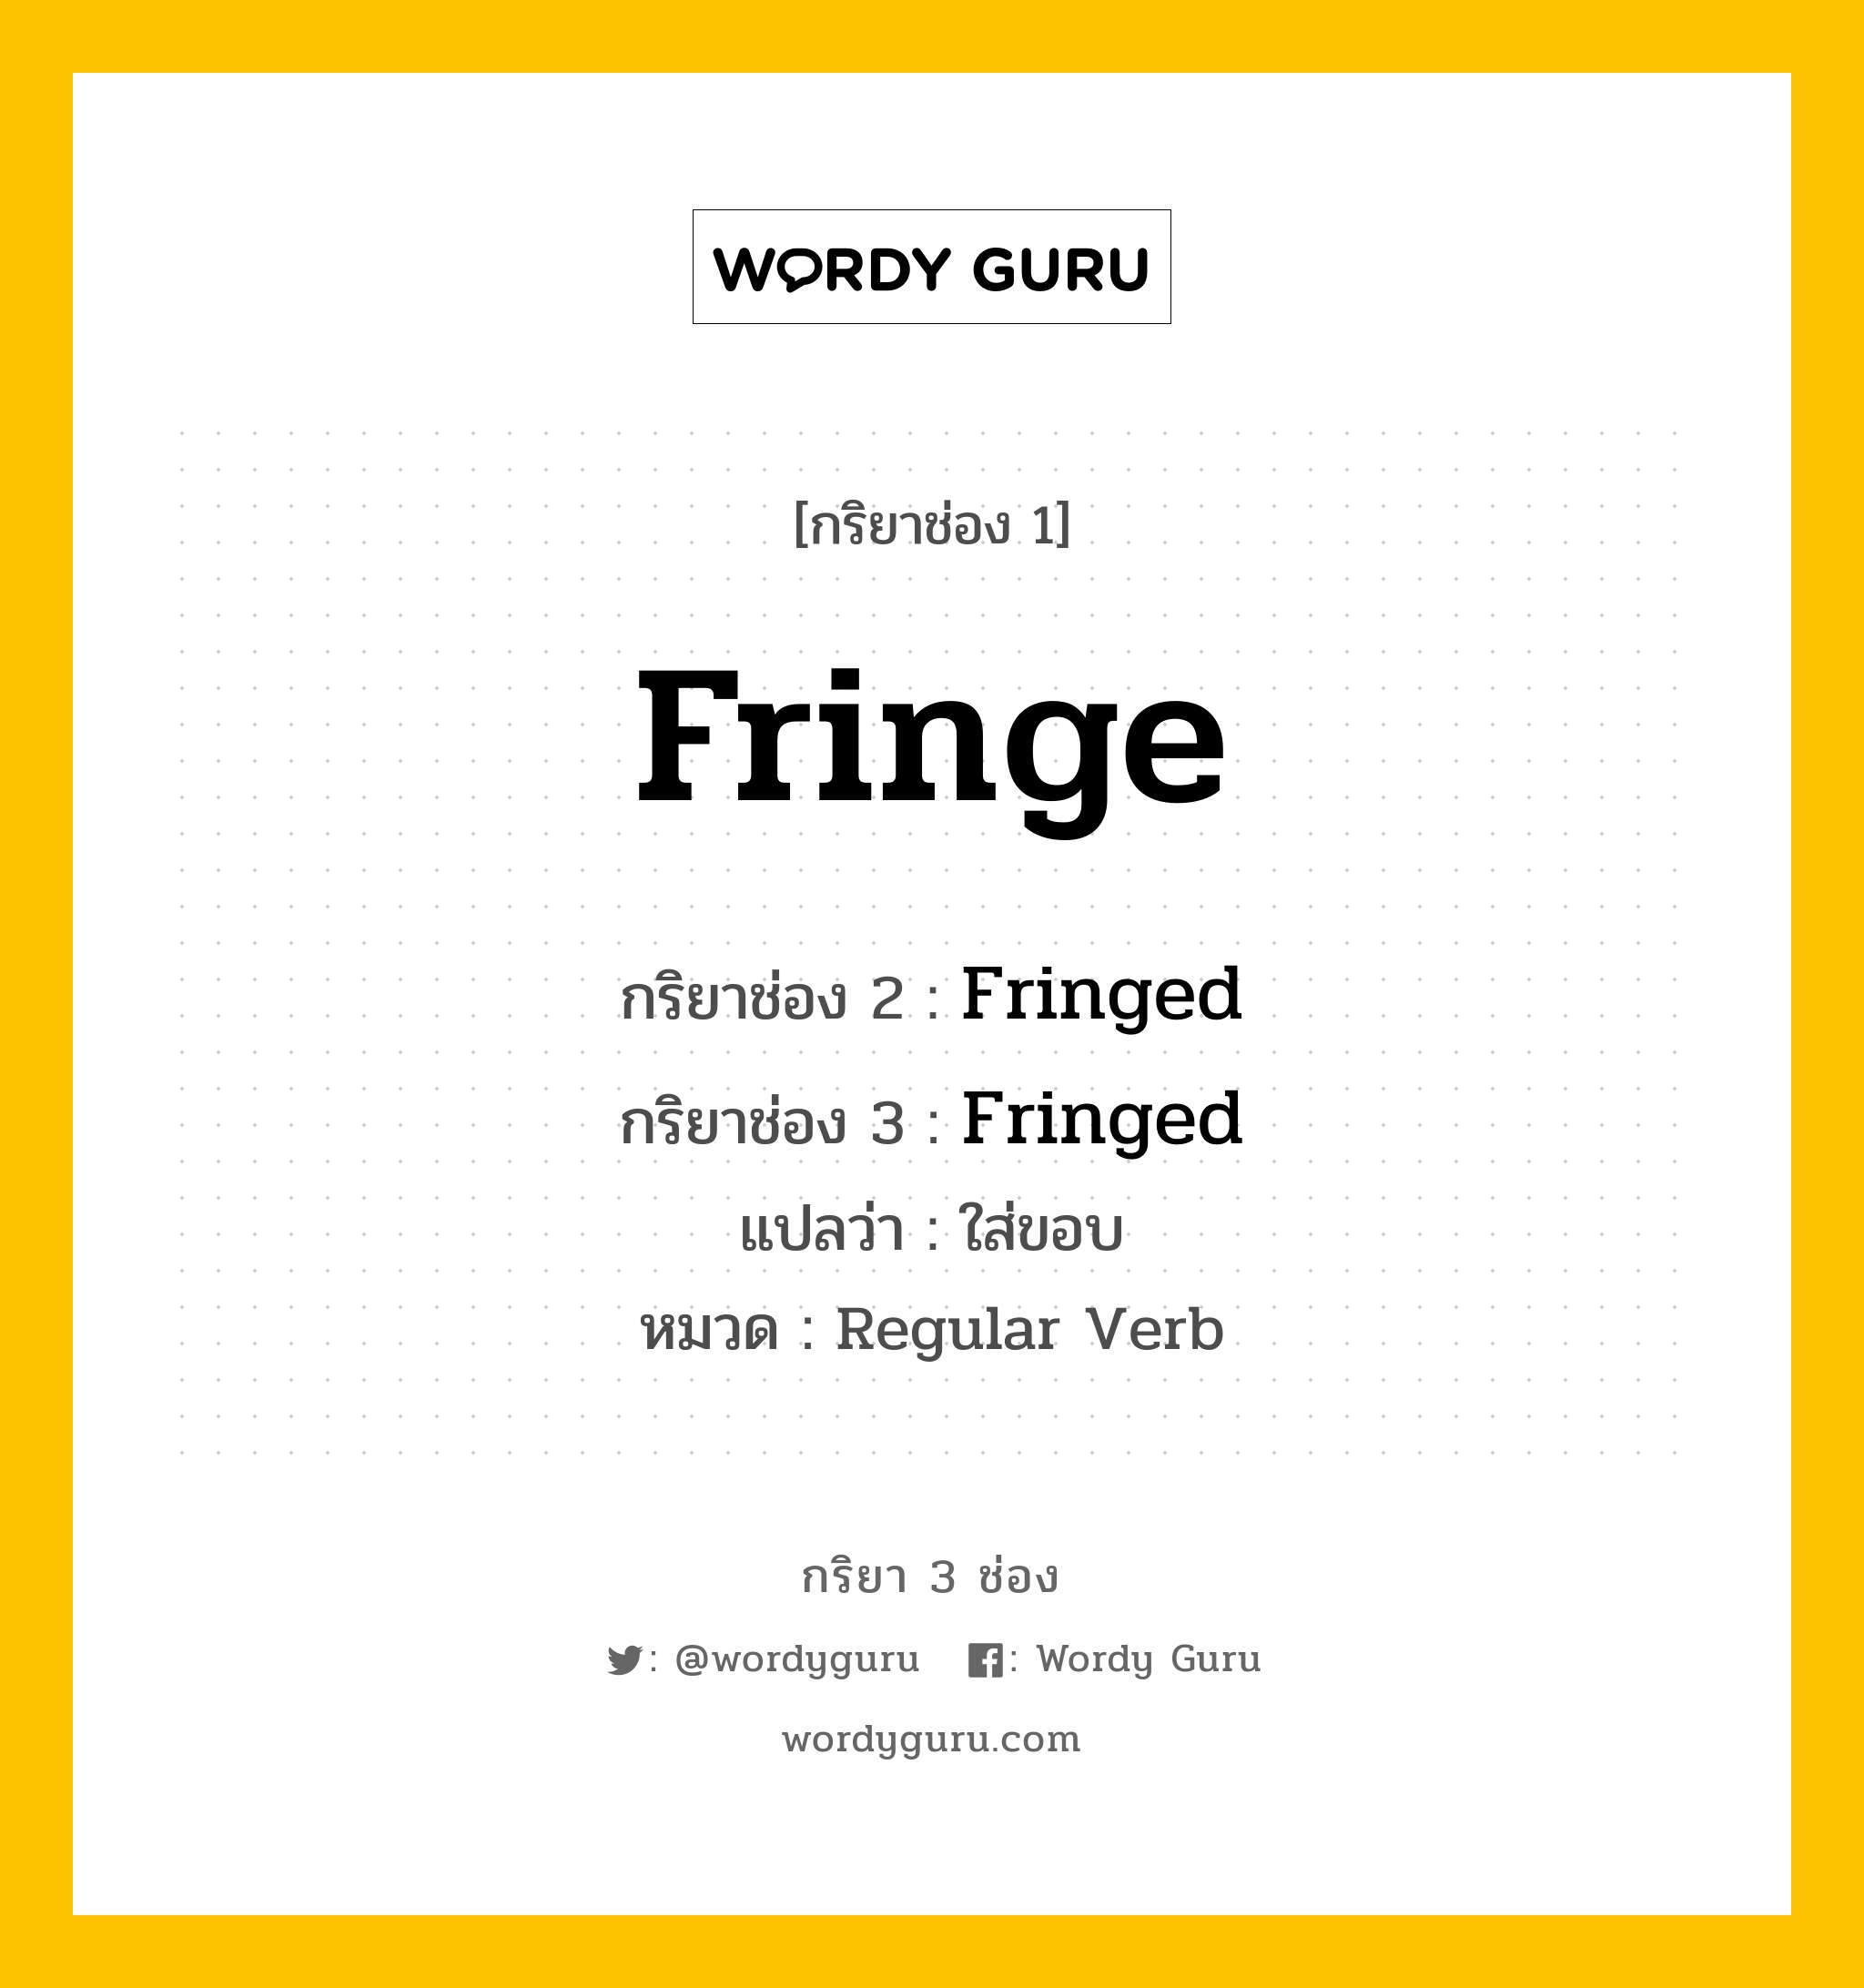 กริยา 3 ช่อง ของ Fringe คืออะไร? มาดูคำอ่าน คำแปลกันเลย, กริยาช่อง 1 Fringe กริยาช่อง 2 Fringed กริยาช่อง 3 Fringed แปลว่า ใส่ขอบ หมวด Regular Verb หมวด Regular Verb